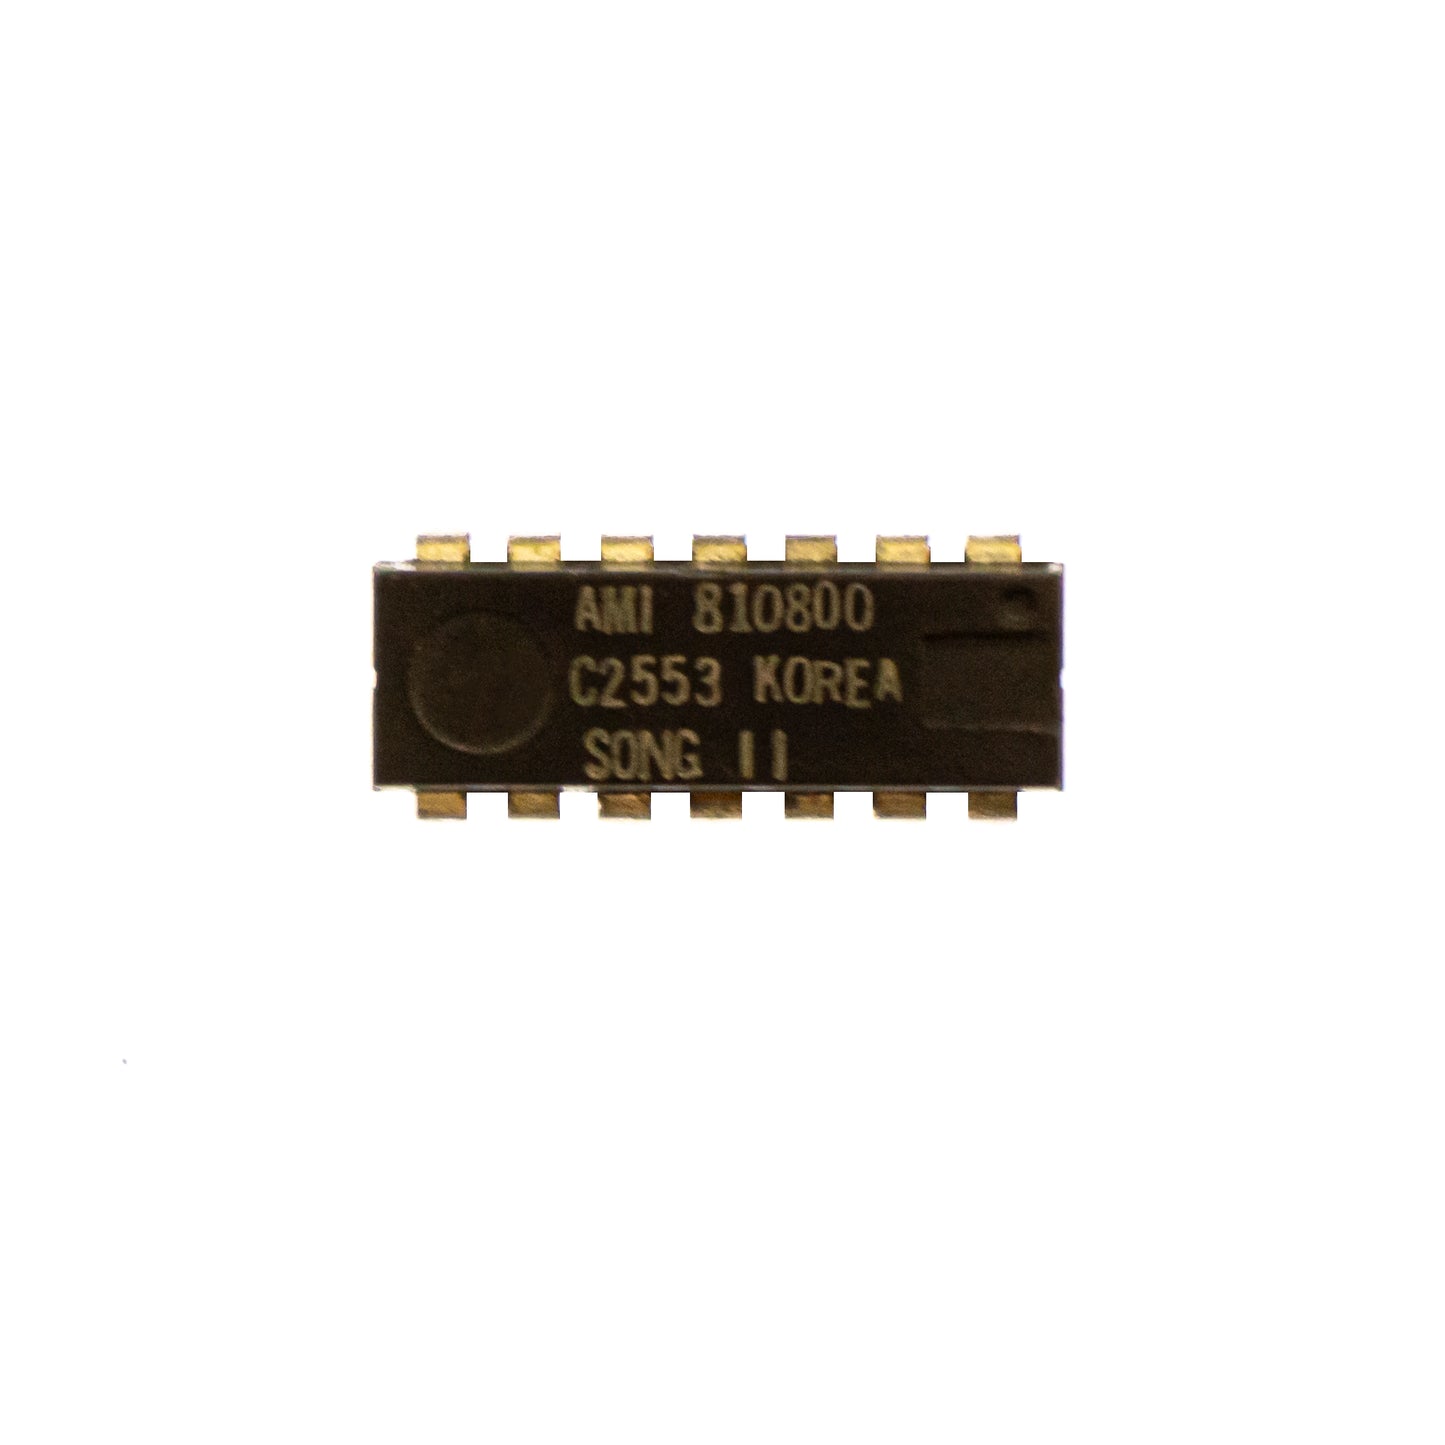 C2553 componente elettronico, circuito integrato, transistor, 14 contatti